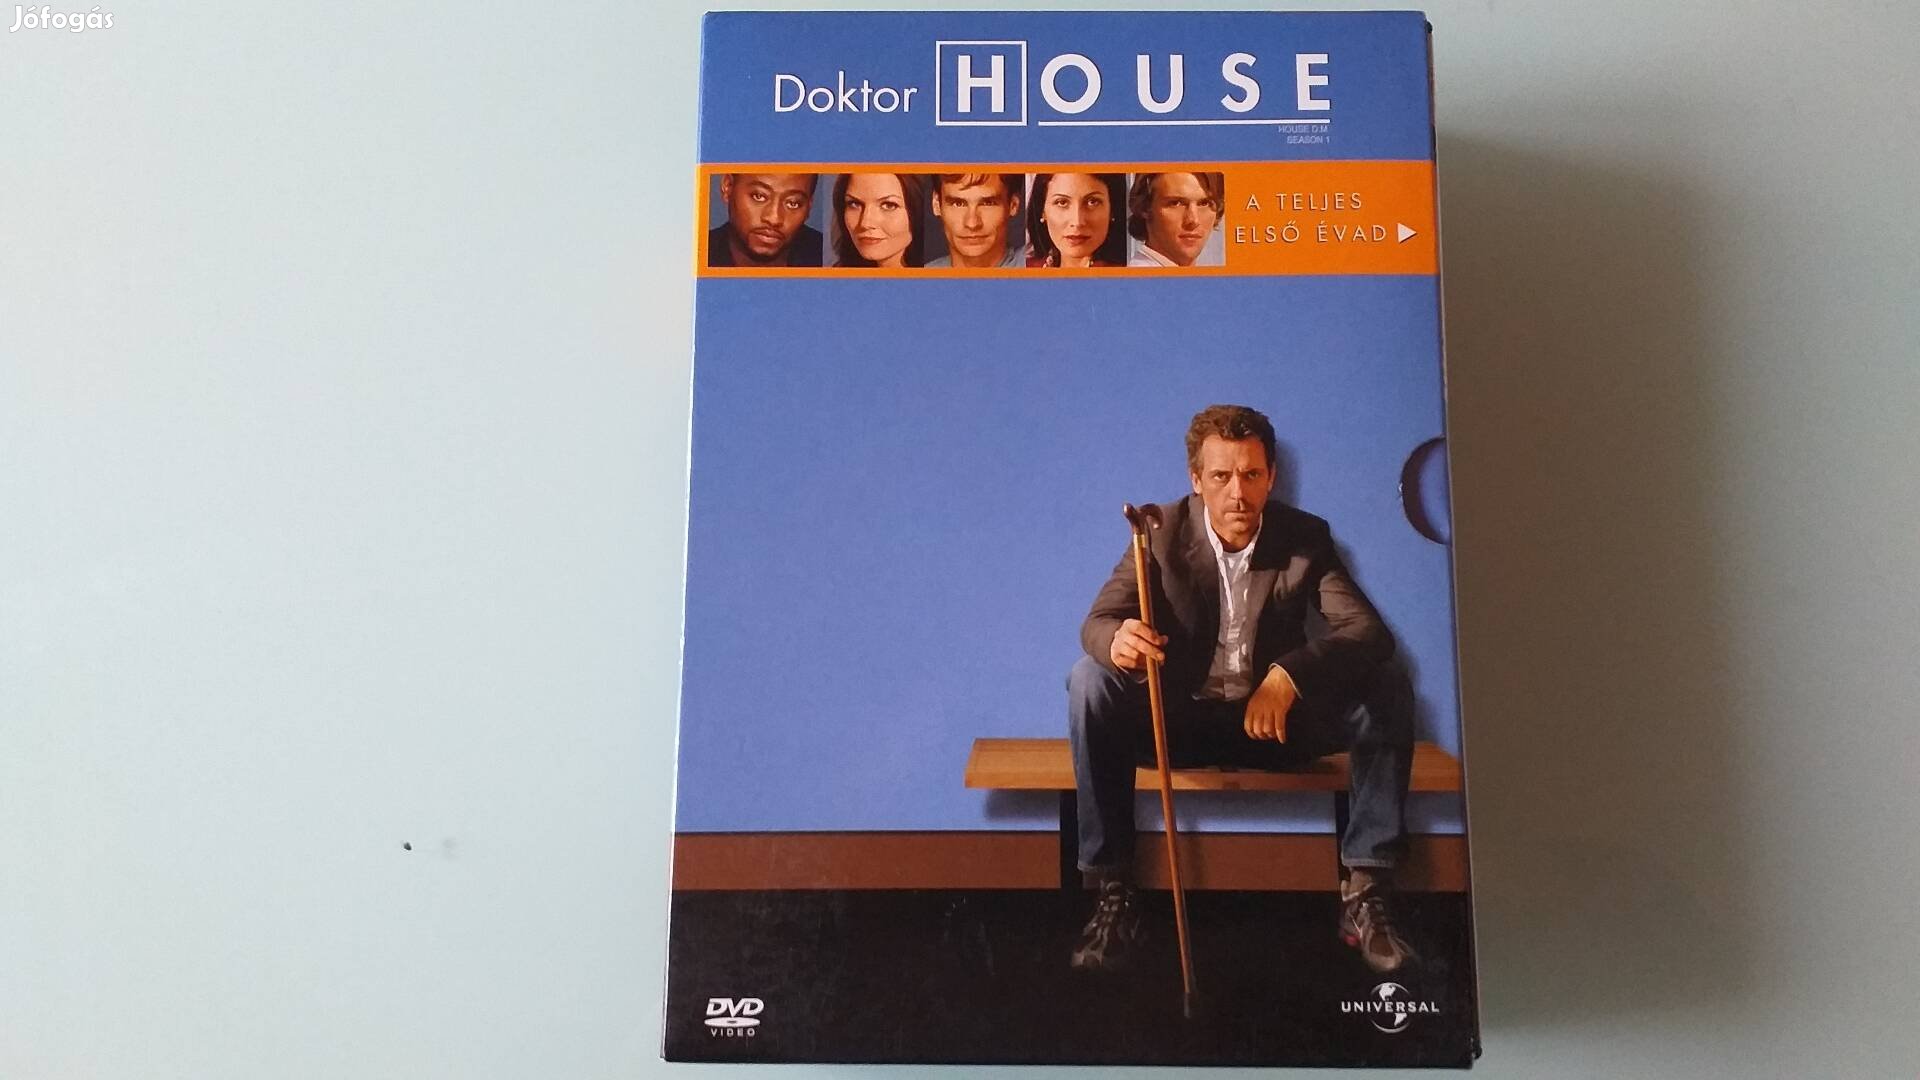 Doktor House  teljes első évad DVD